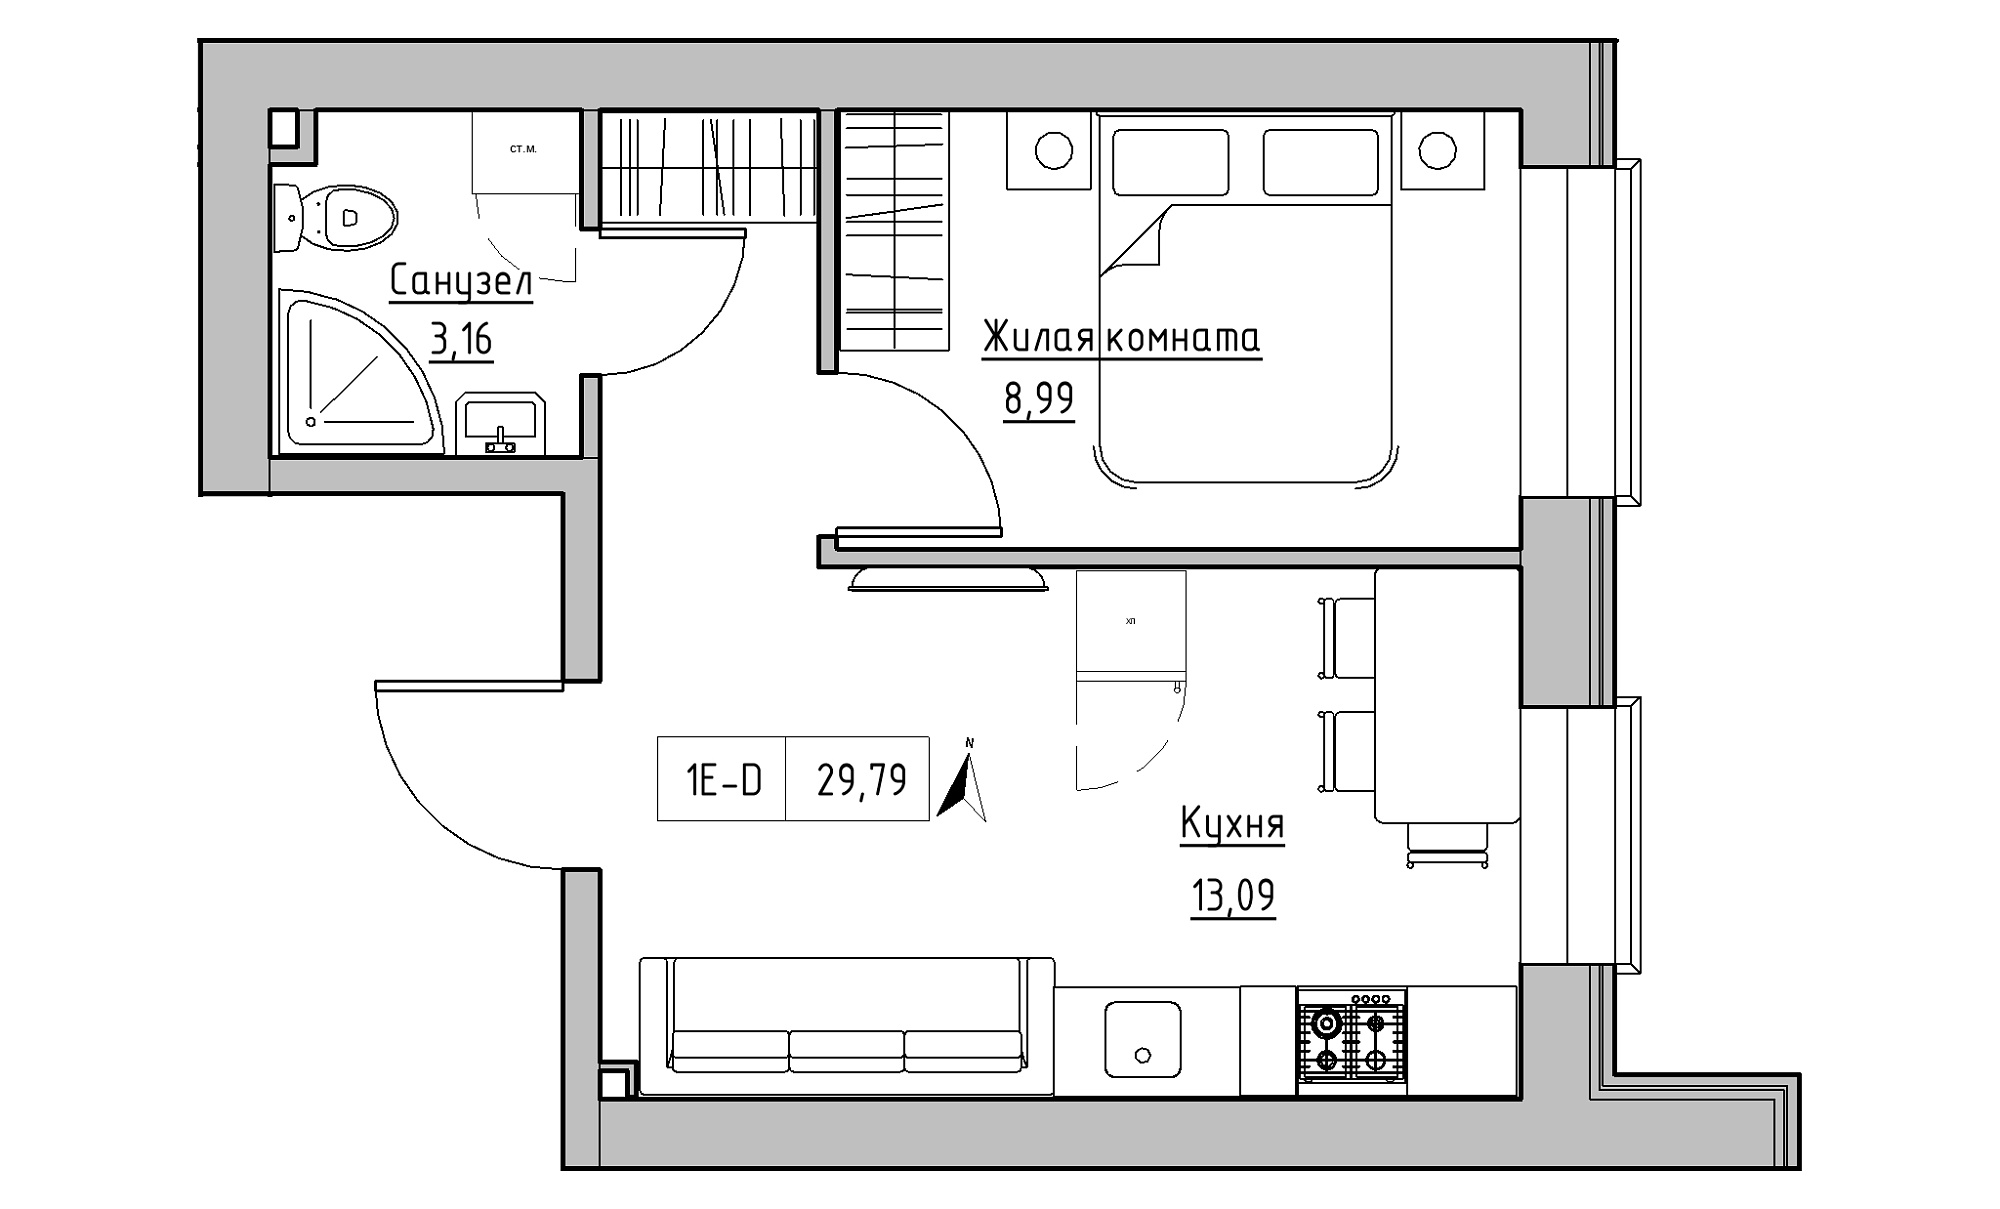 Планування 1-к квартира площею 29.79м2, KS-016-01/0013.